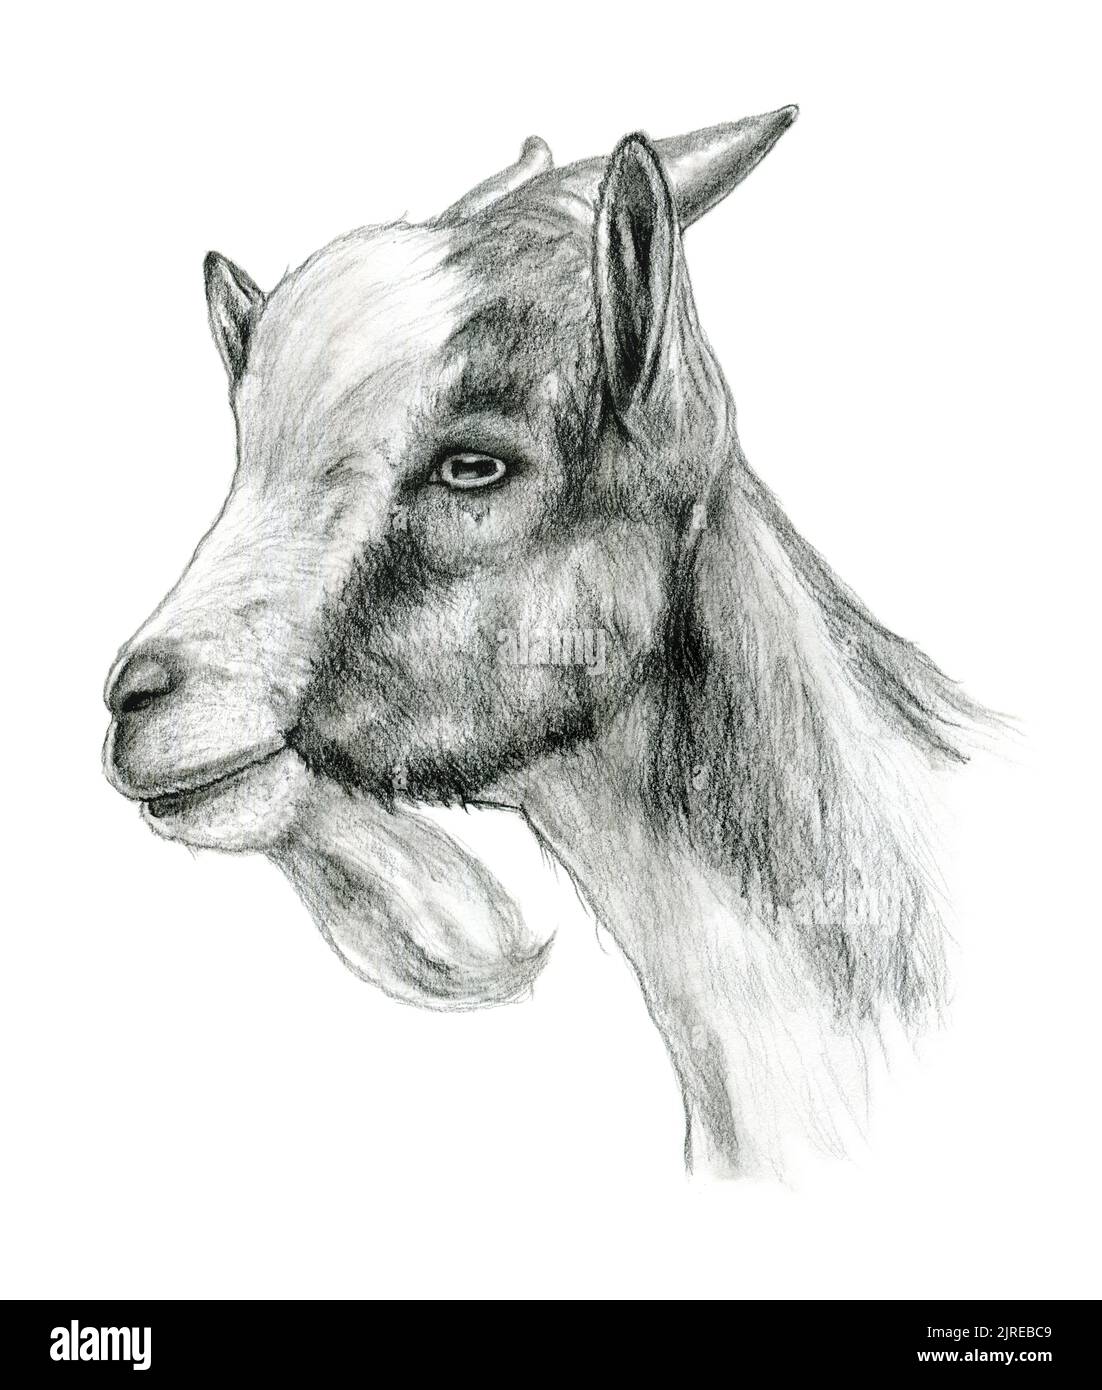 Dibujo a lápiz de la cabeza de una cabra. Ilustración tradicional en papel. Foto de stock